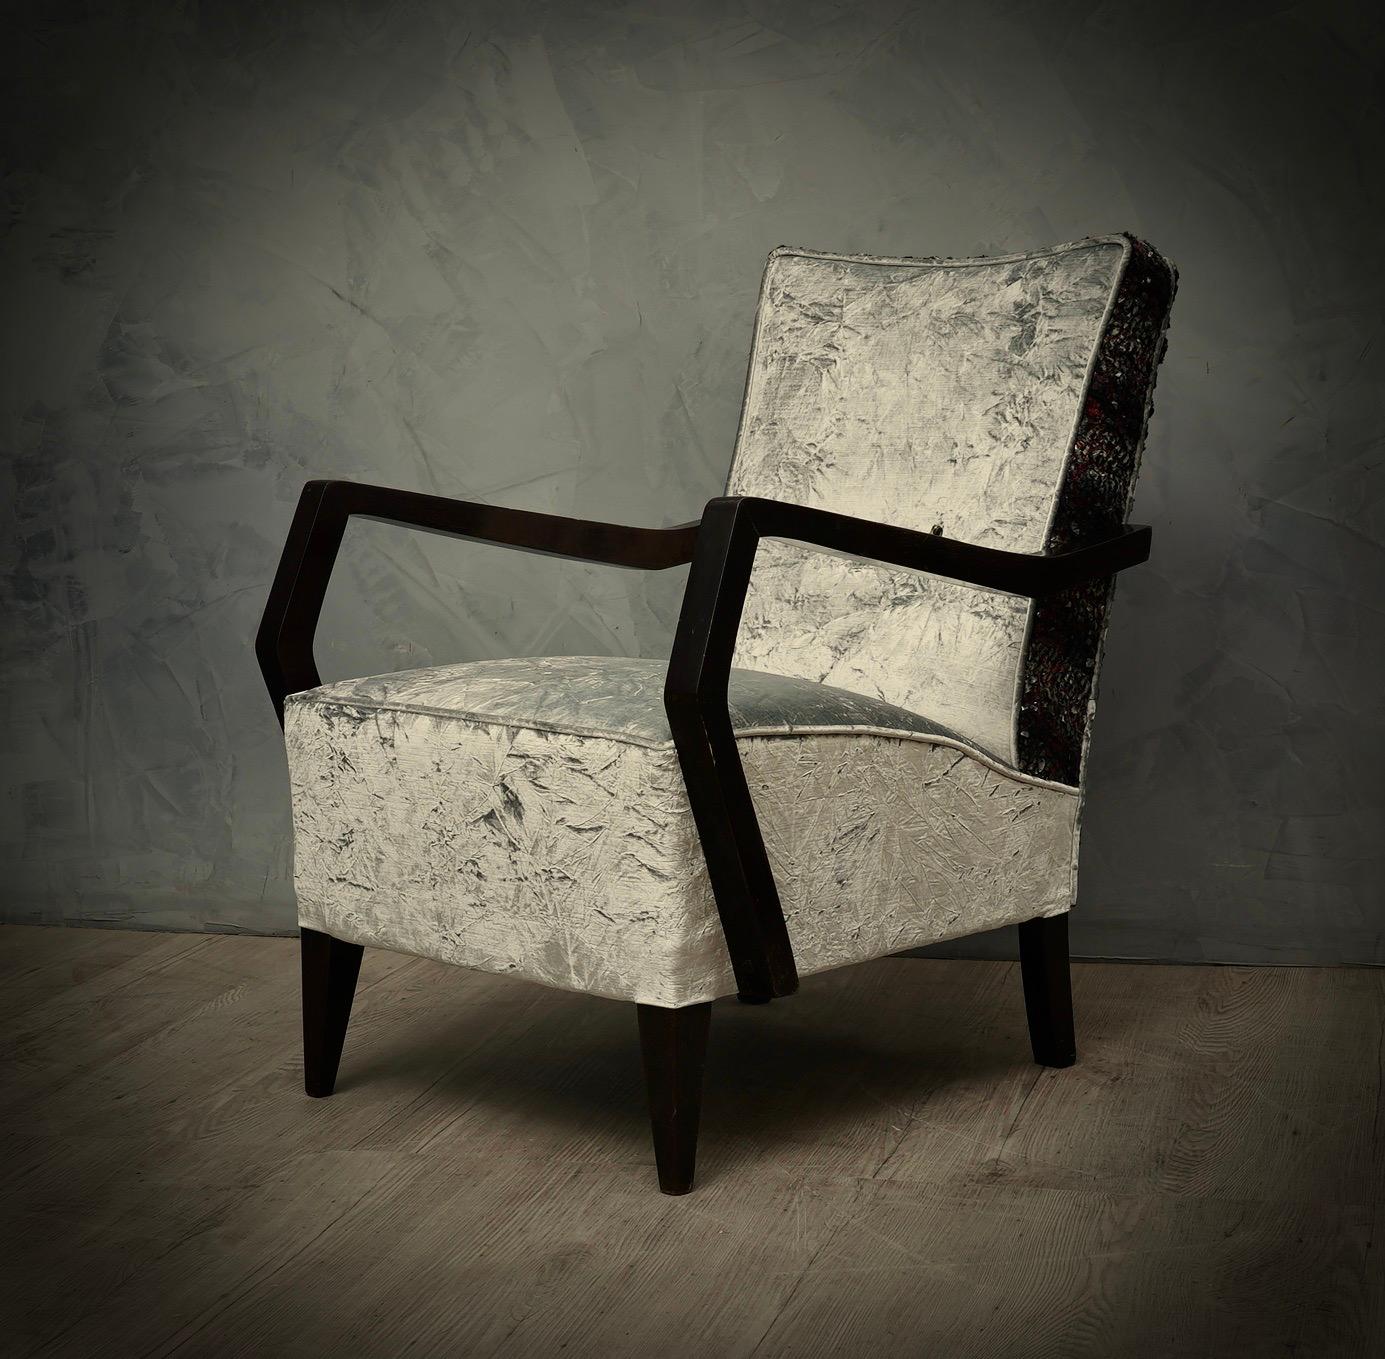 Aspect très élégant grâce à l'utilisation d'un tissu peu commun, provenant d'une fabrique de soie italienne particulière, cette douce tapisserie donne à ces fauteuils un aspect très luxueux.

Le tout est recouvert de deux types de velours combinés.